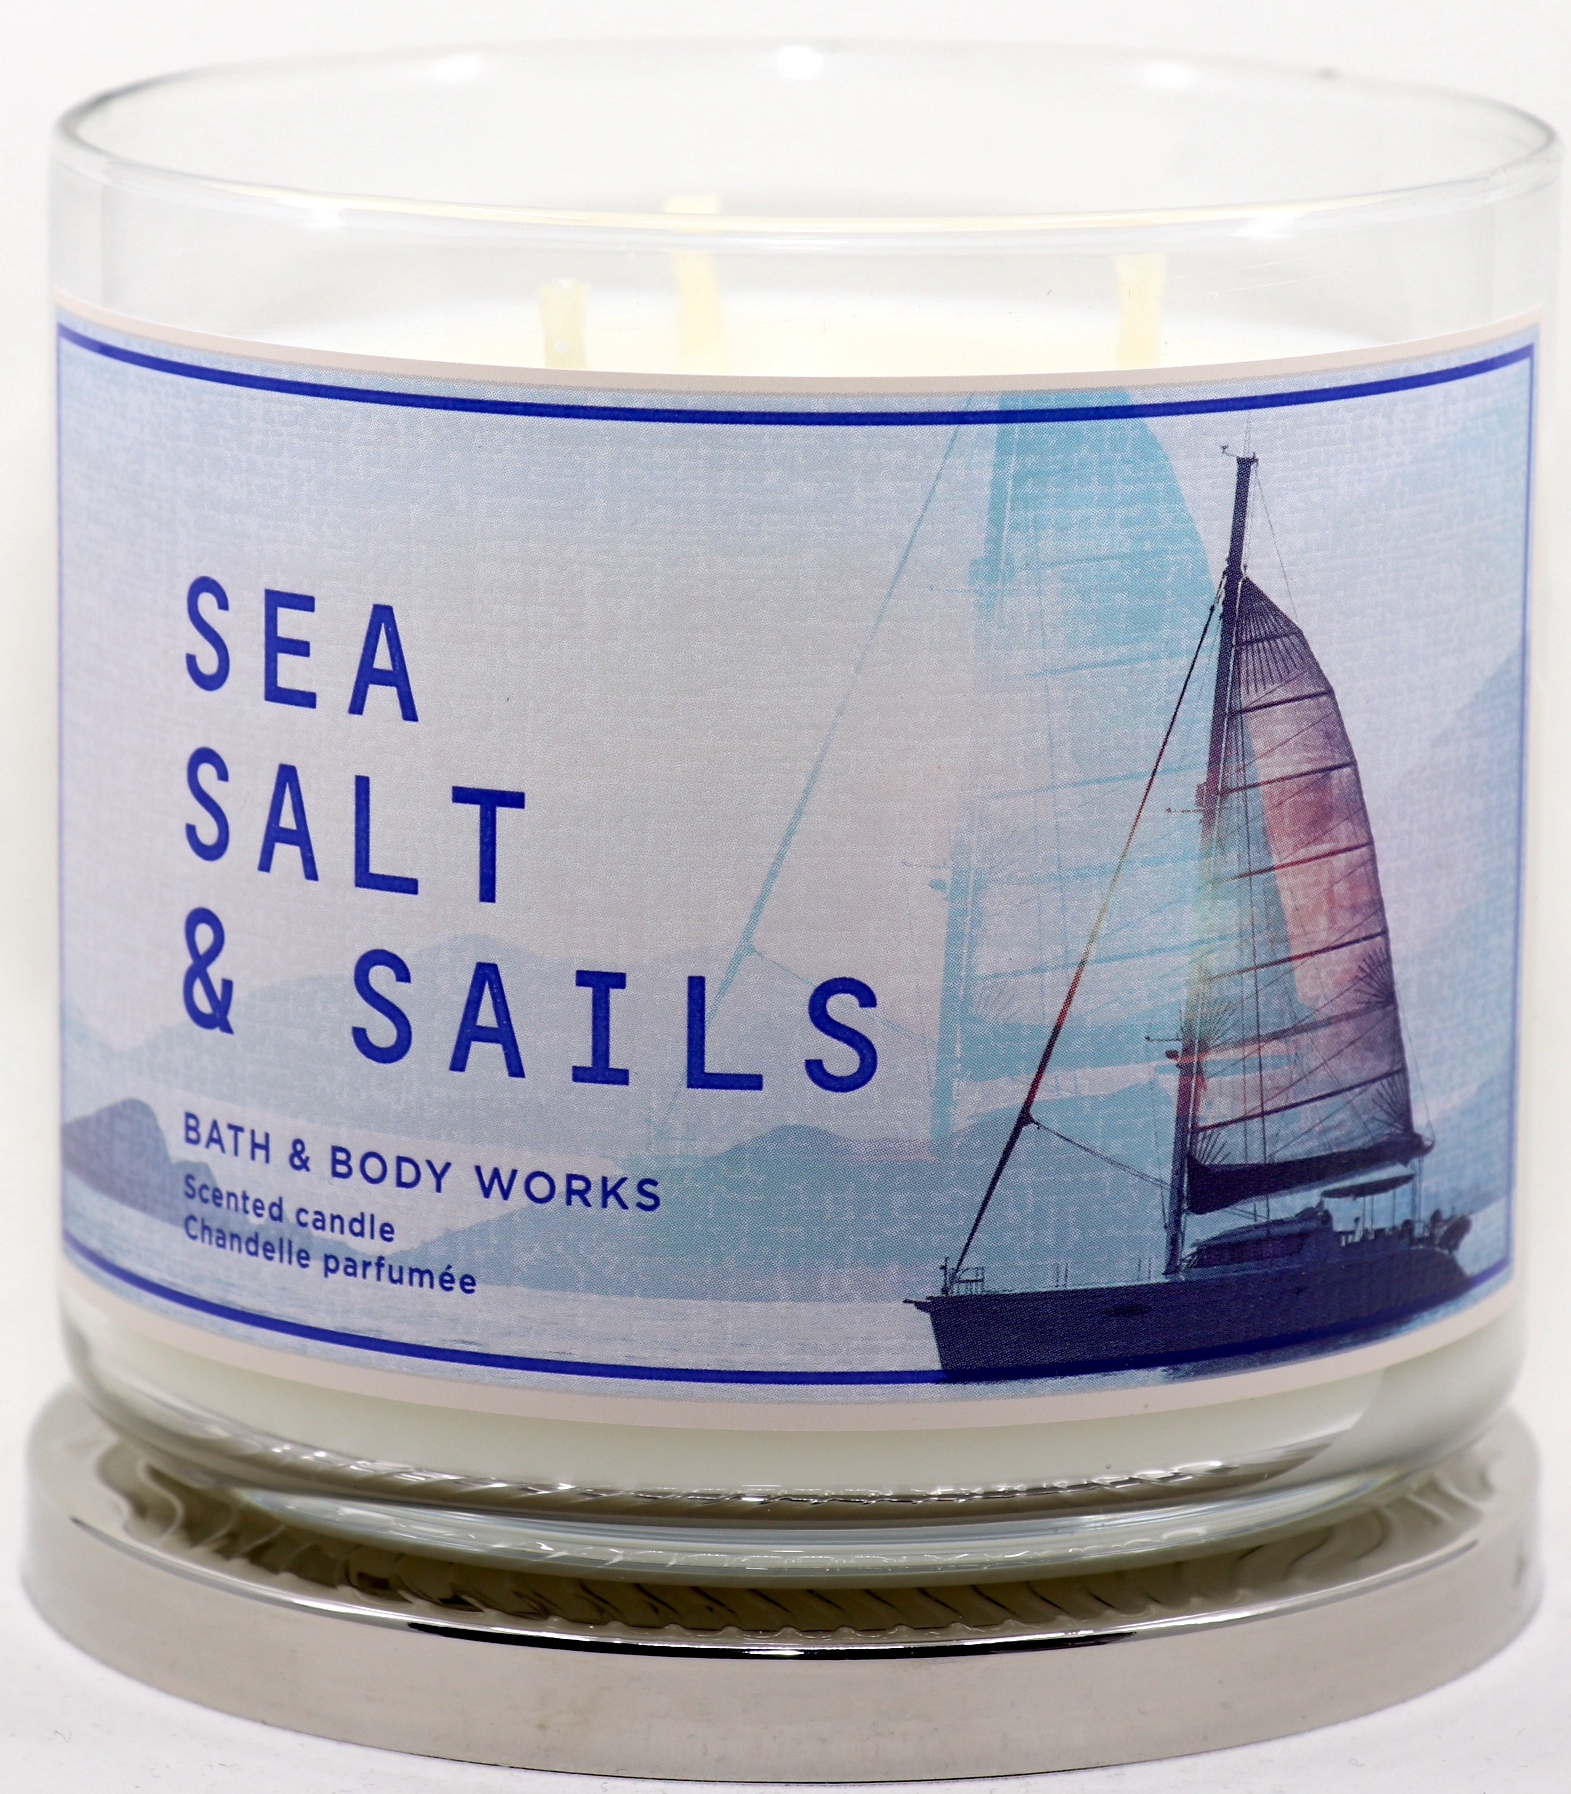 Bath & Body Works Sea Salt & Sails 411g